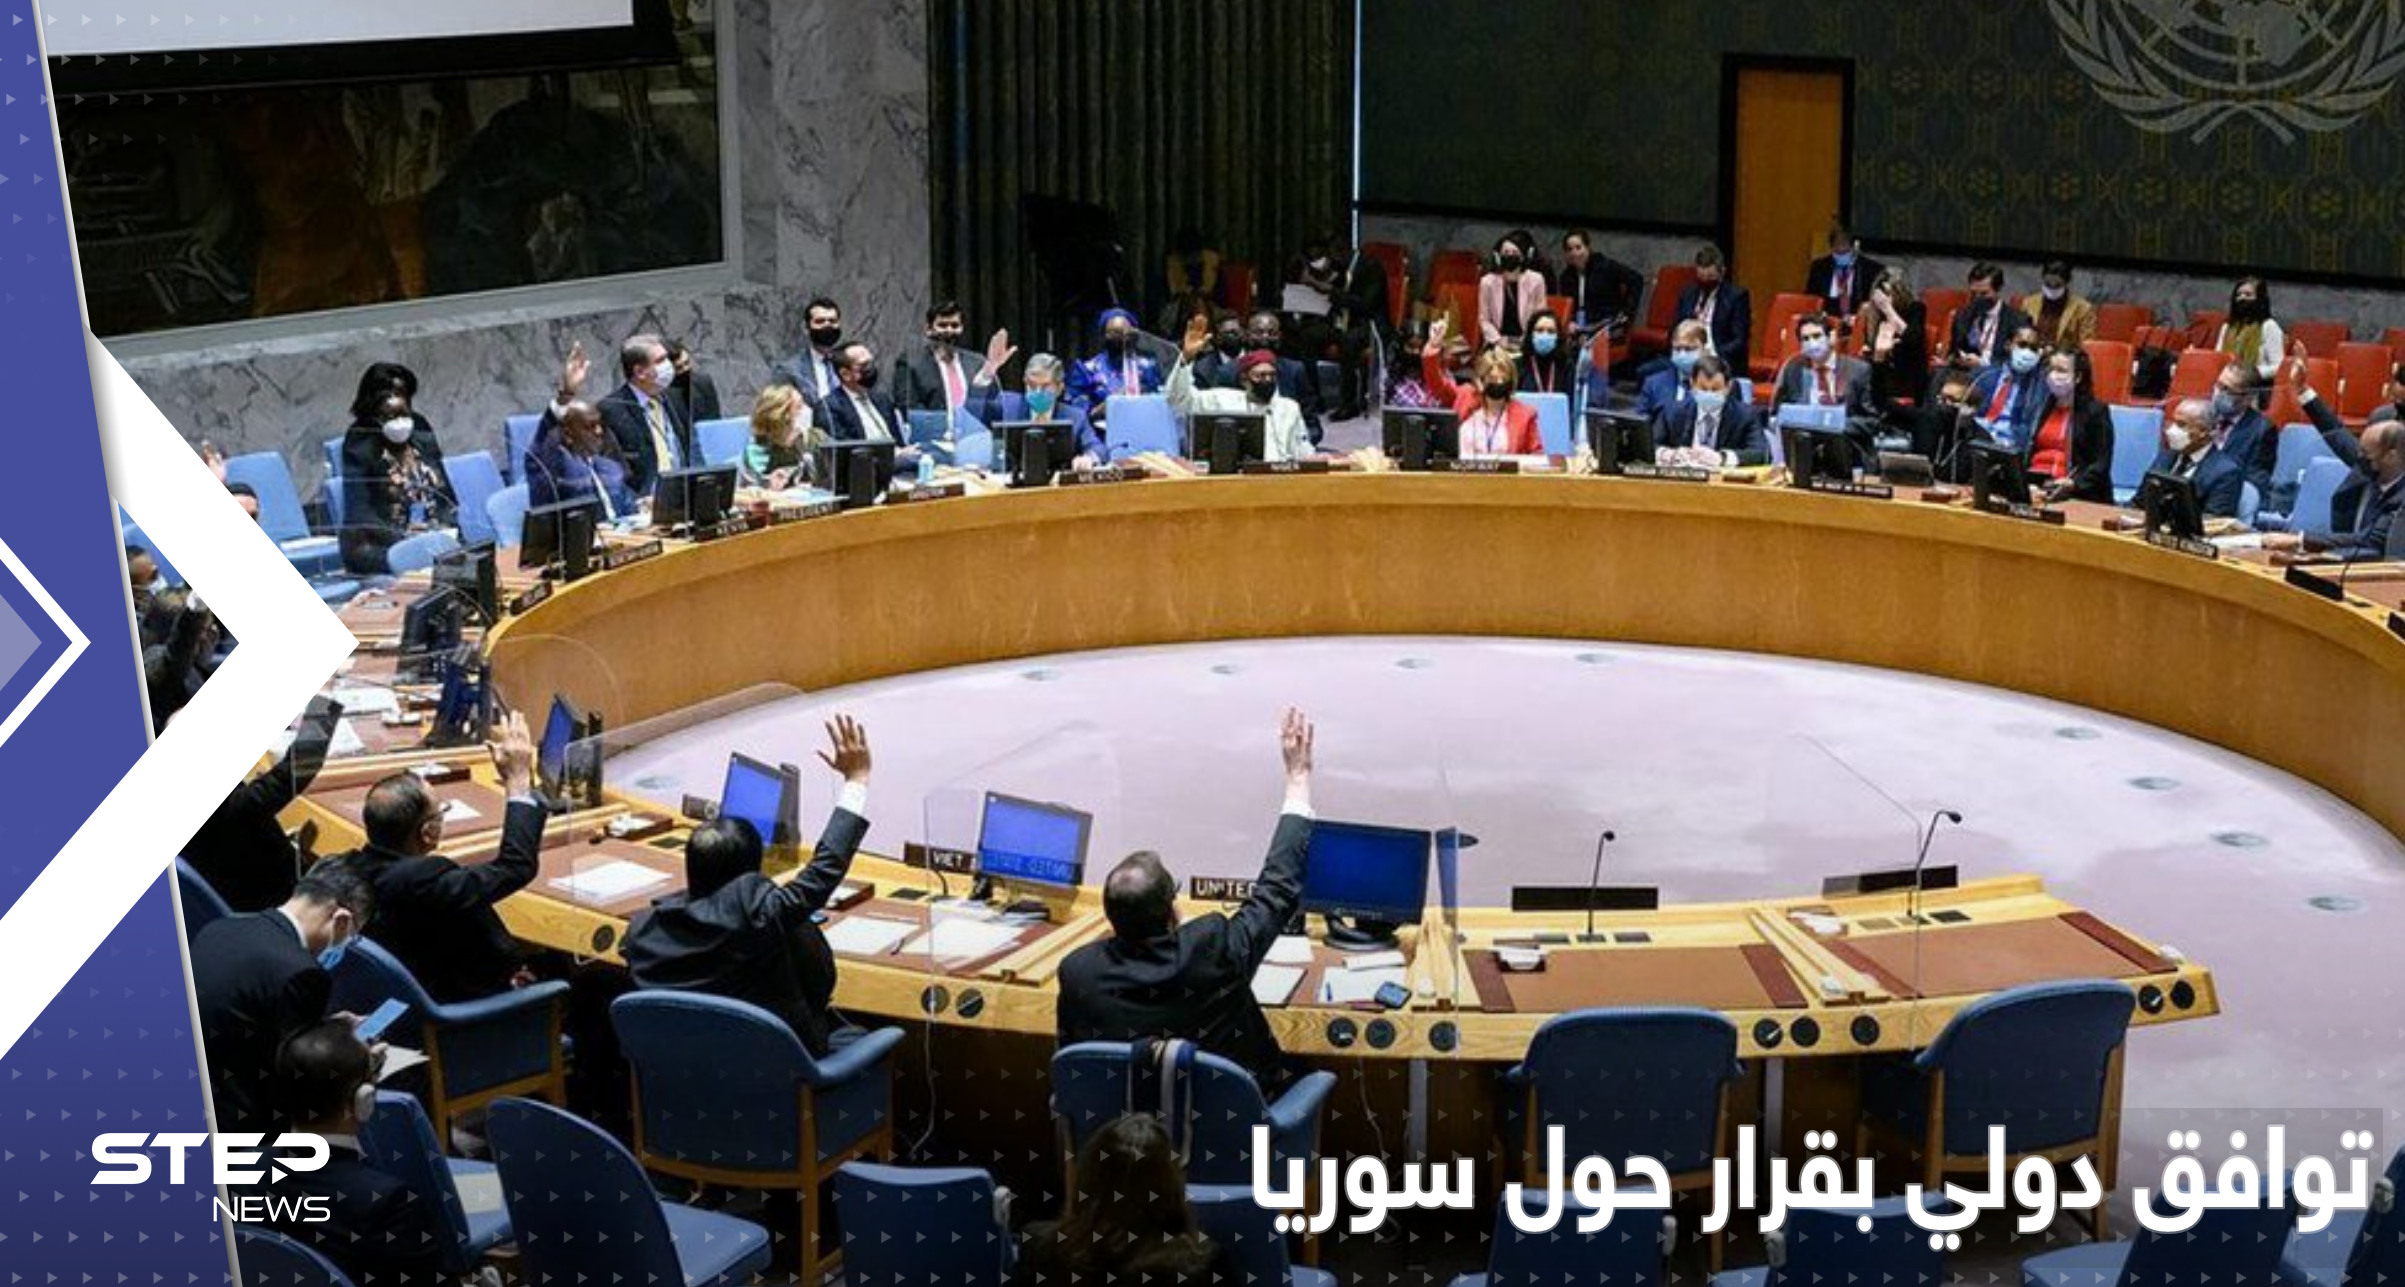 على غير العادة.. توافق بالإجماع في مجلس الأمن الدولي بقرار حول سوريا